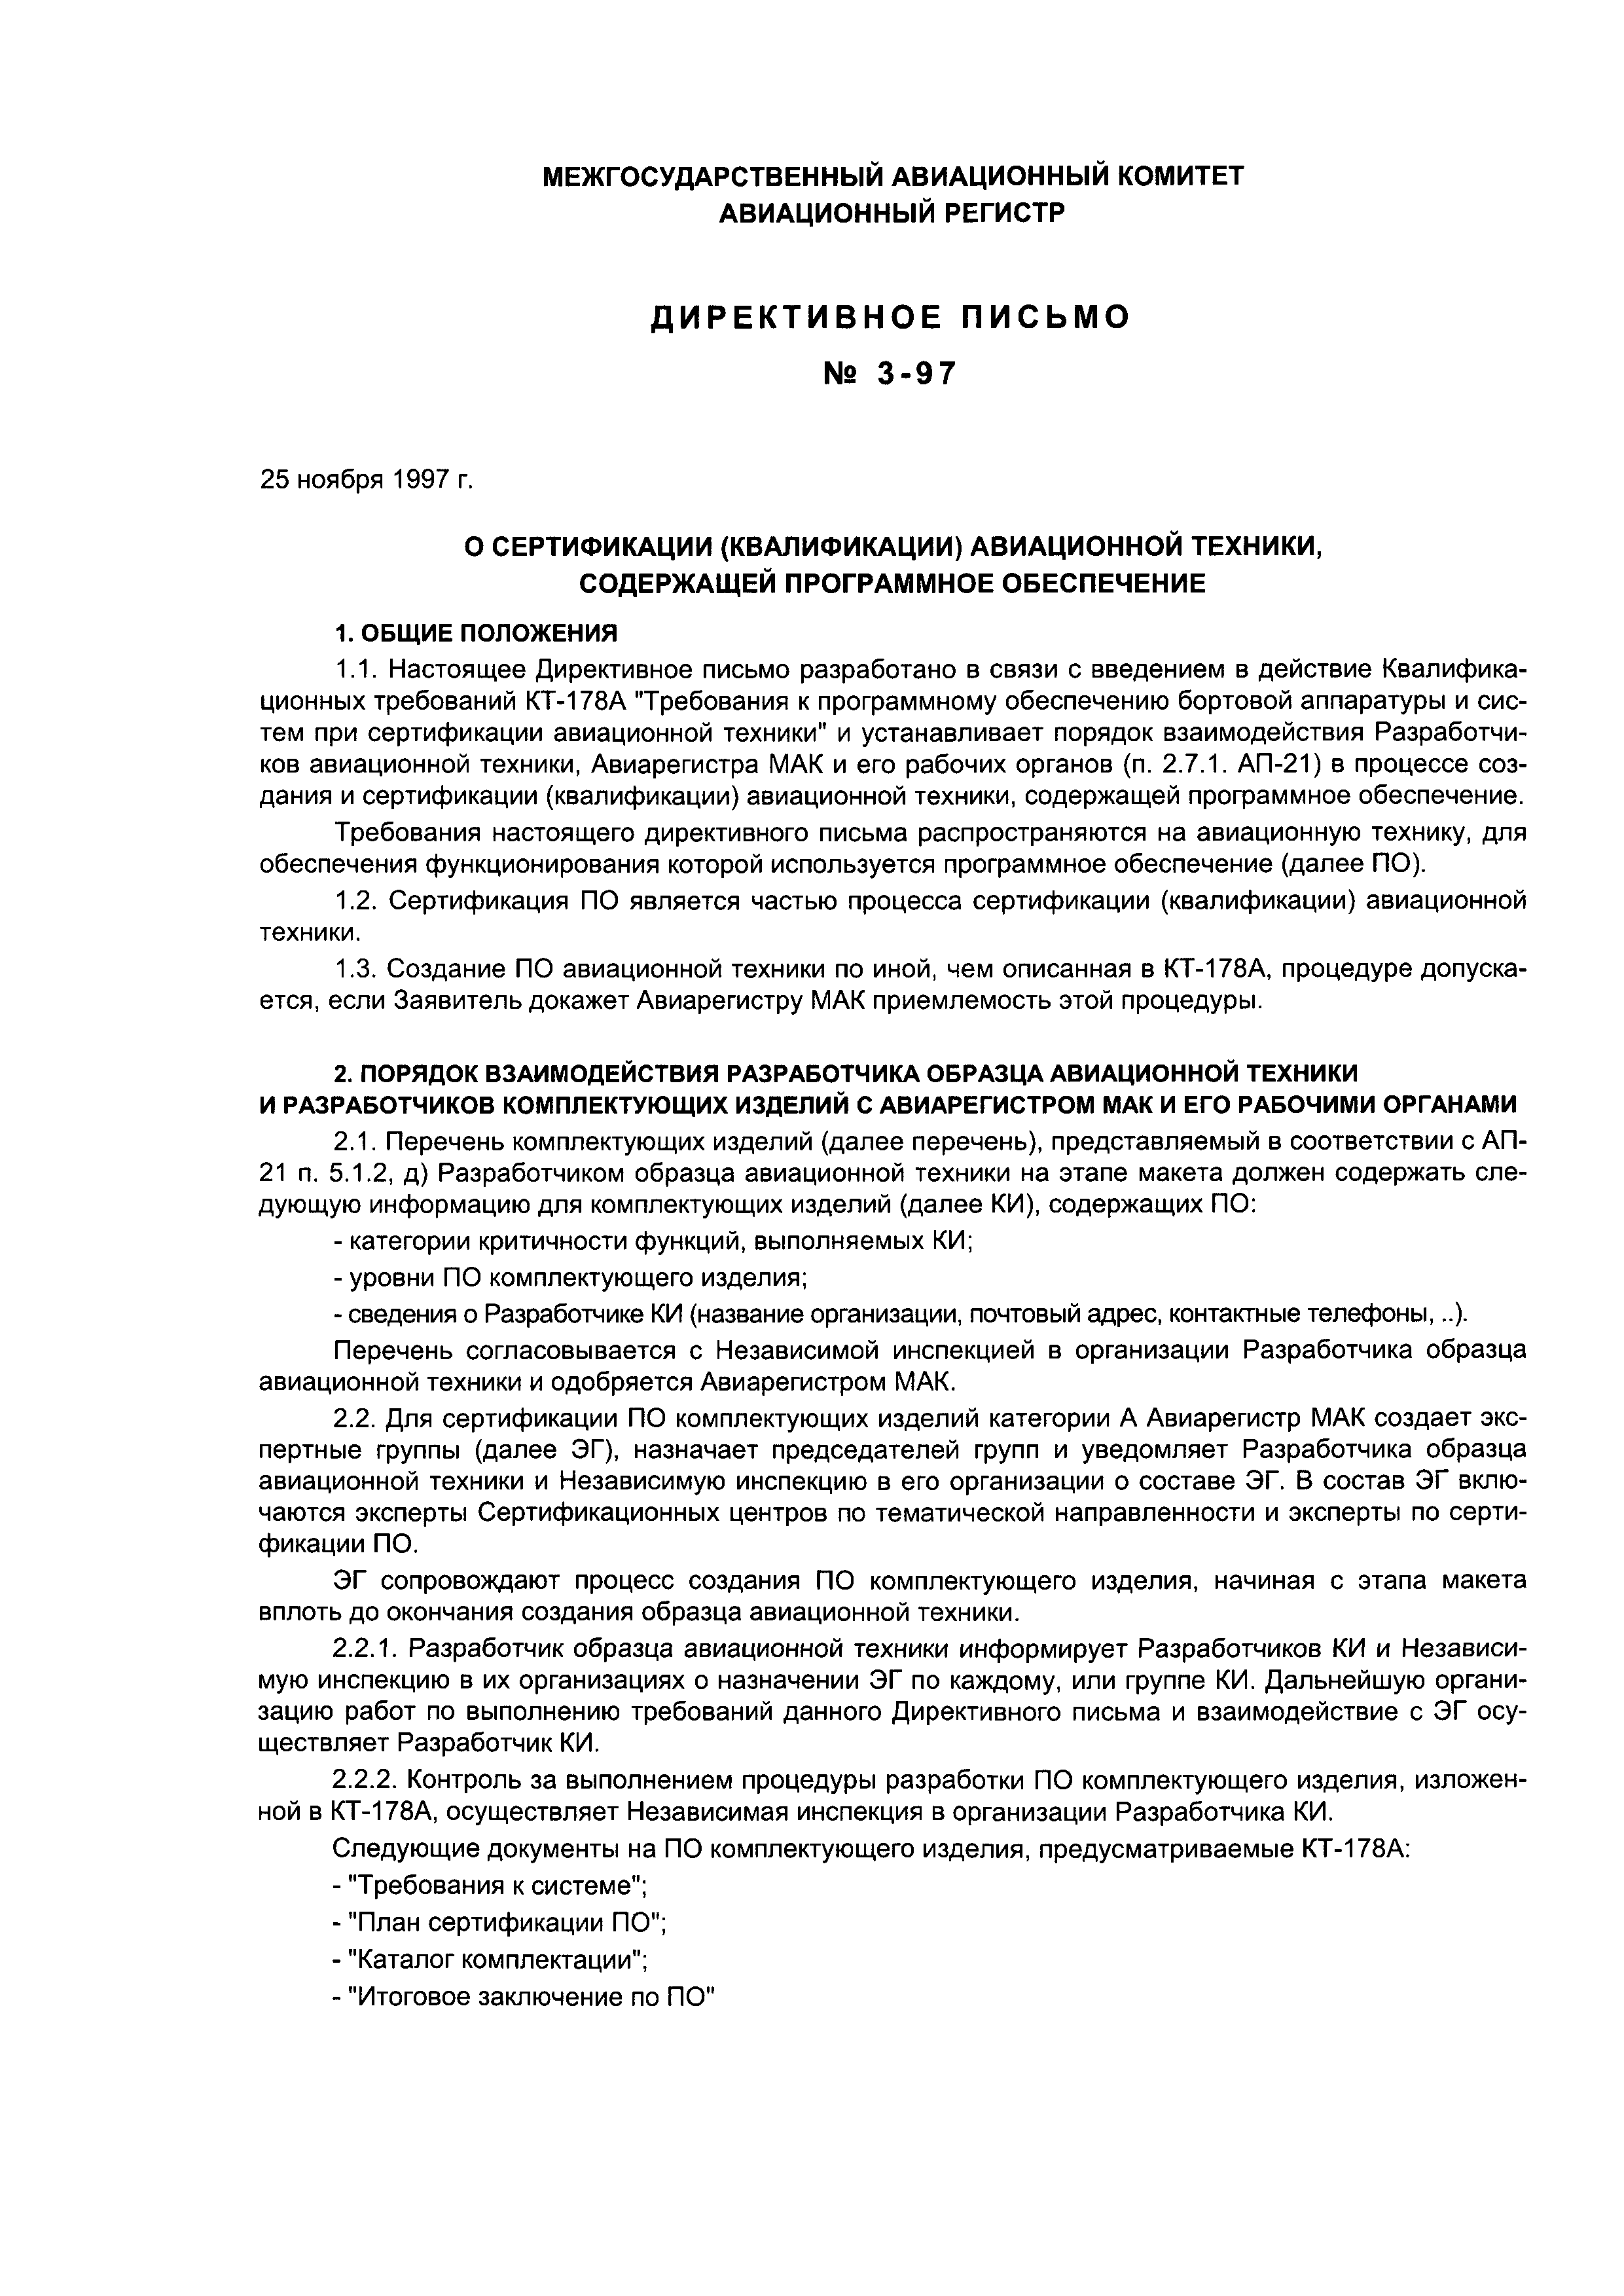 Директивное письмо 3-97